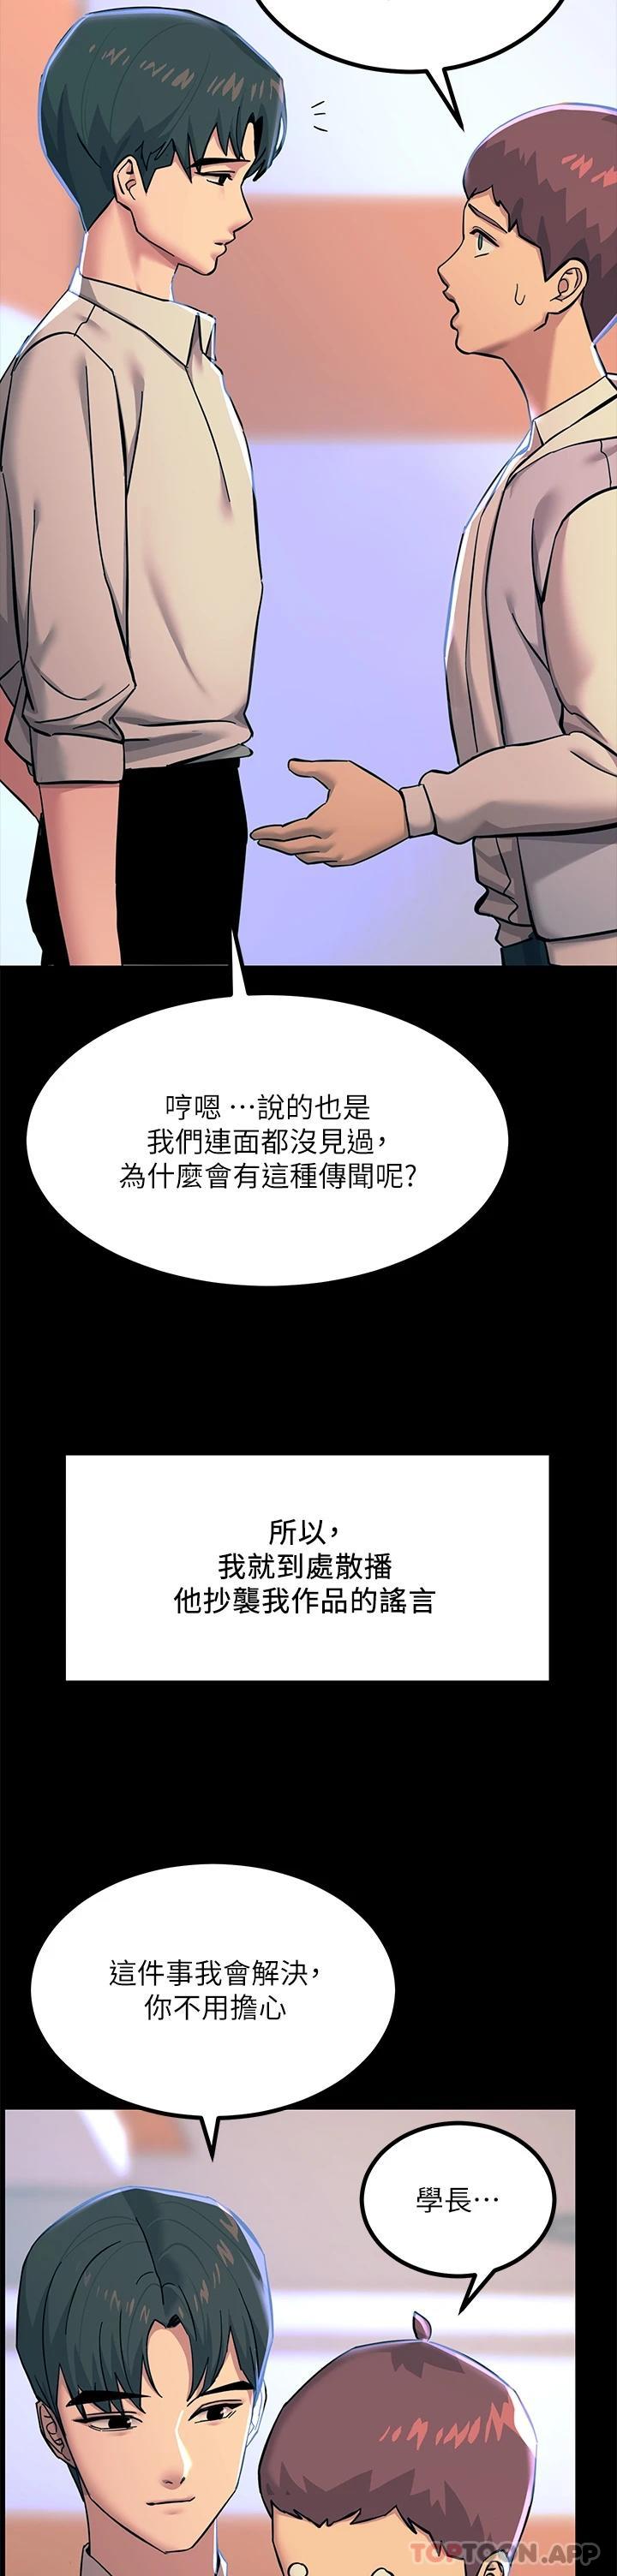 韩国污漫画 觸電大師 第20话 用胸器按摩老二的饥渴母狗 48